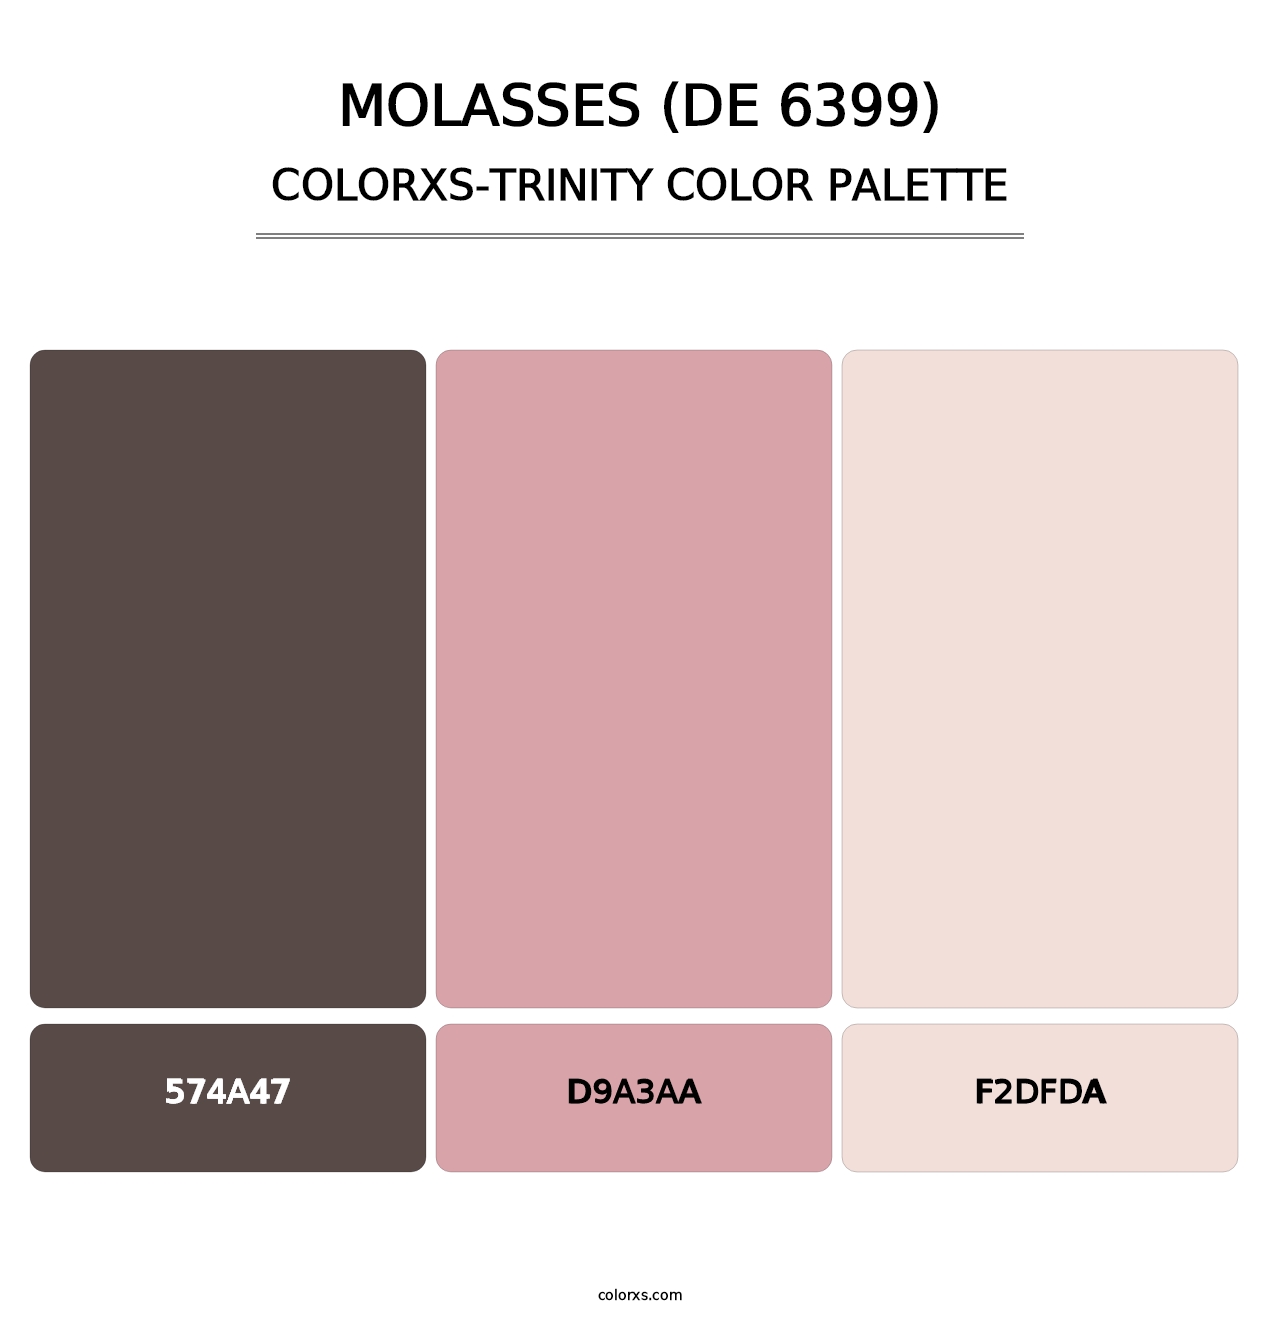 Molasses (DE 6399) - Colorxs Trinity Palette